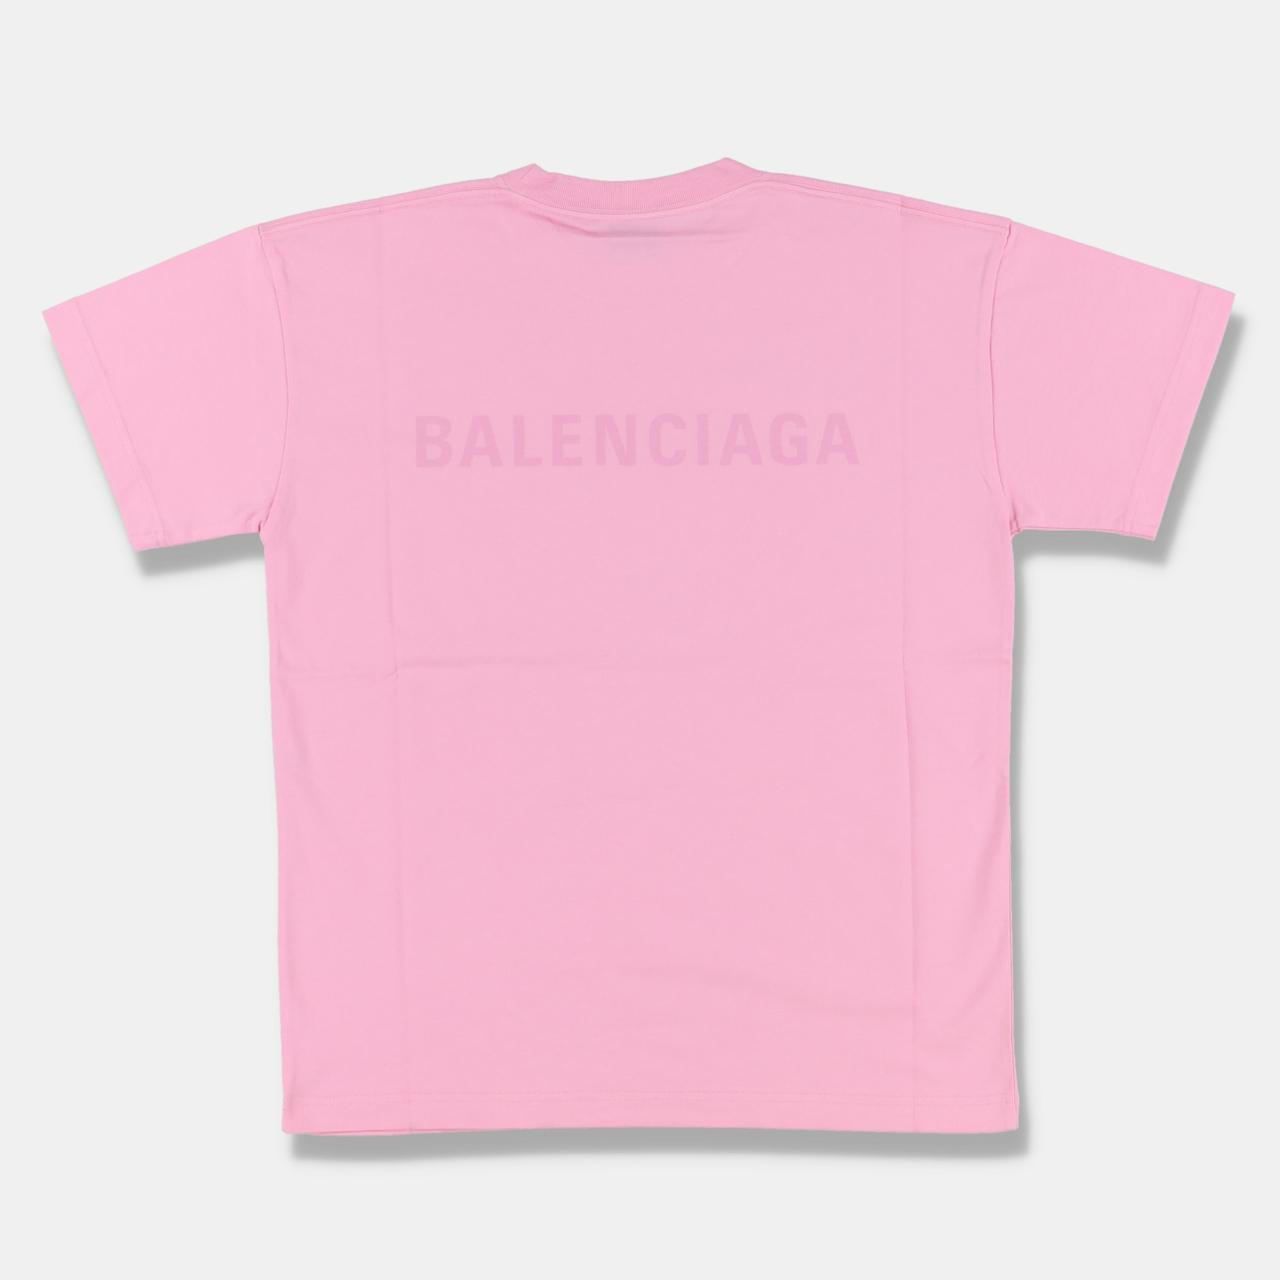 Product Image 1 - Balenciaga Pink Logo Print T-Shirt

-Size